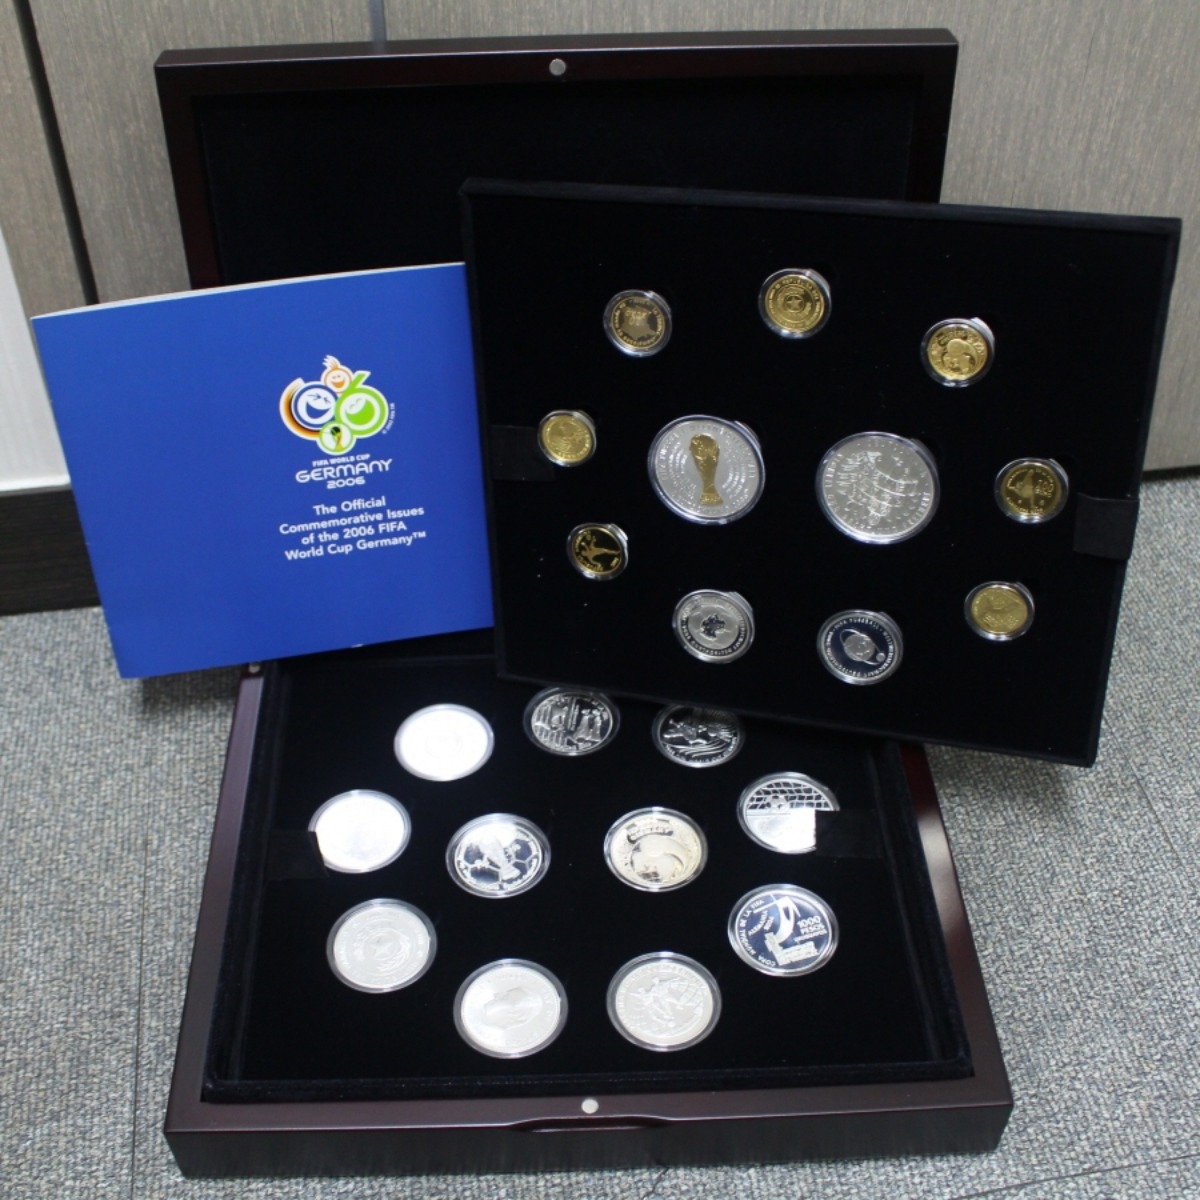 독일 2006년 월드컵 기념 (세계 12개국 발행) 금은화 22종 세트